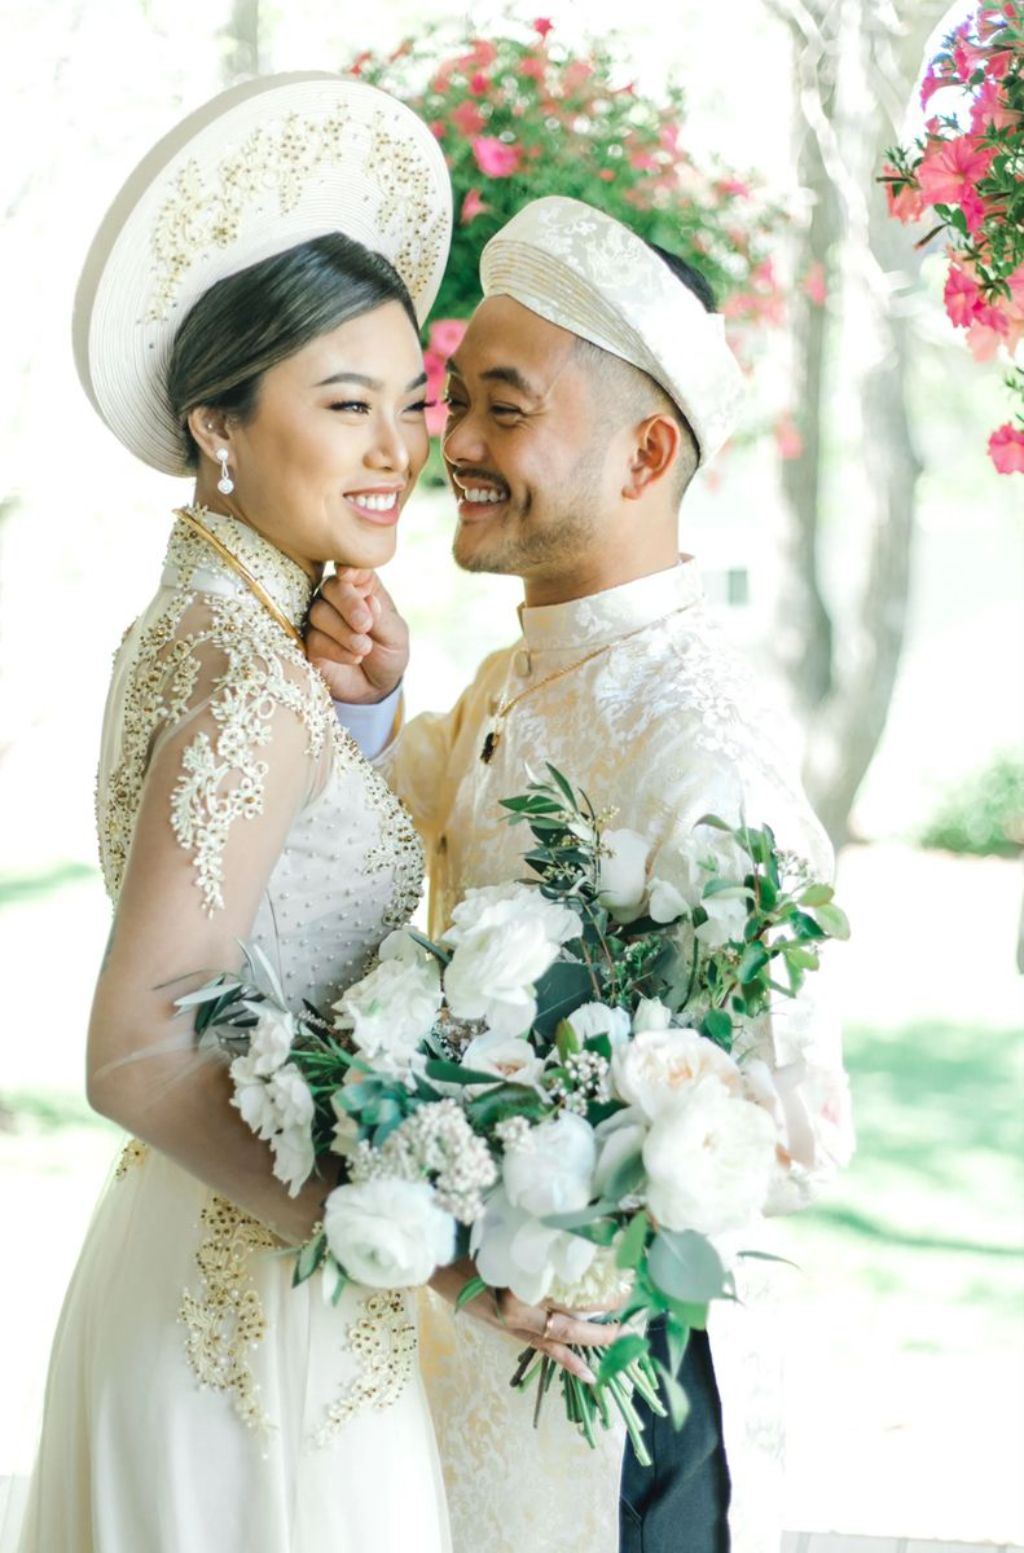 Dianthus Wedding Decor - Dịch vụ chụp ảnh đám cưới trọn gói đẹp nhất ở thành phố Hồ Chí Minh